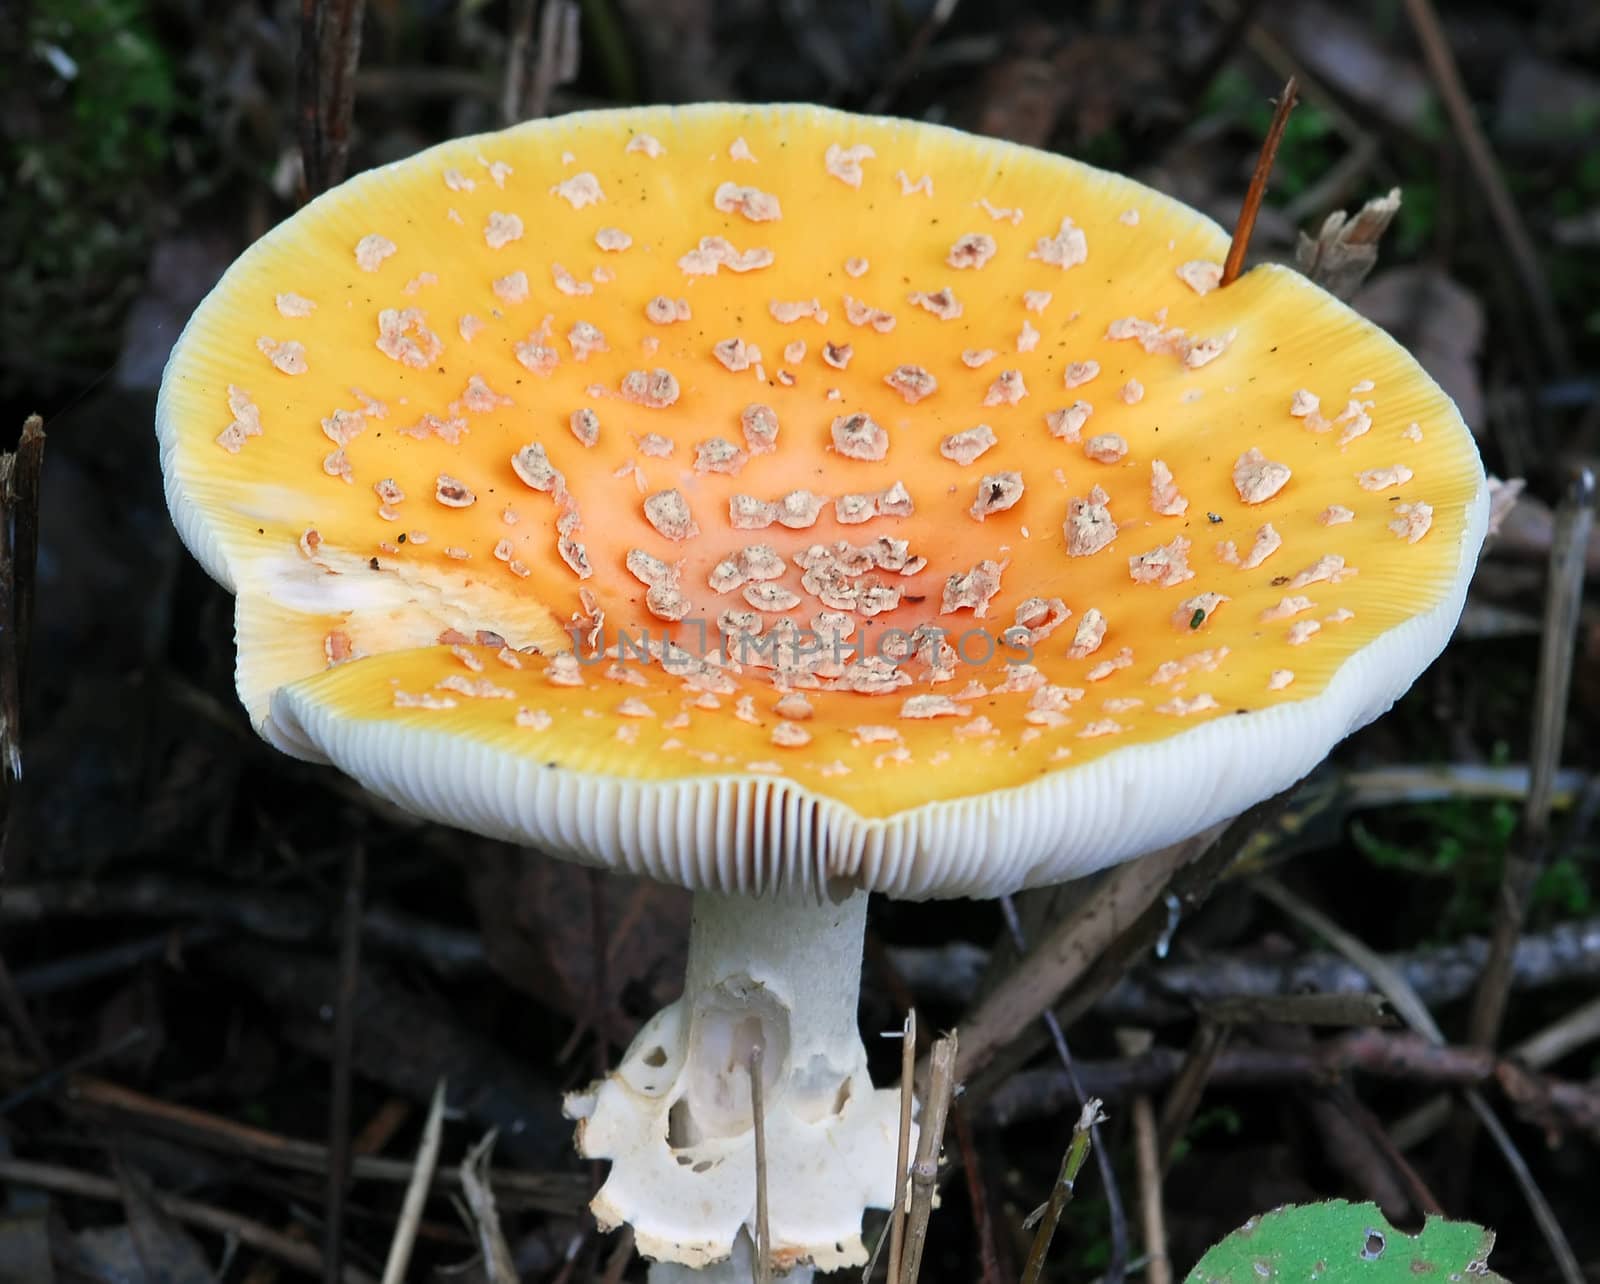 A close-up picture of a wild orange mushroom